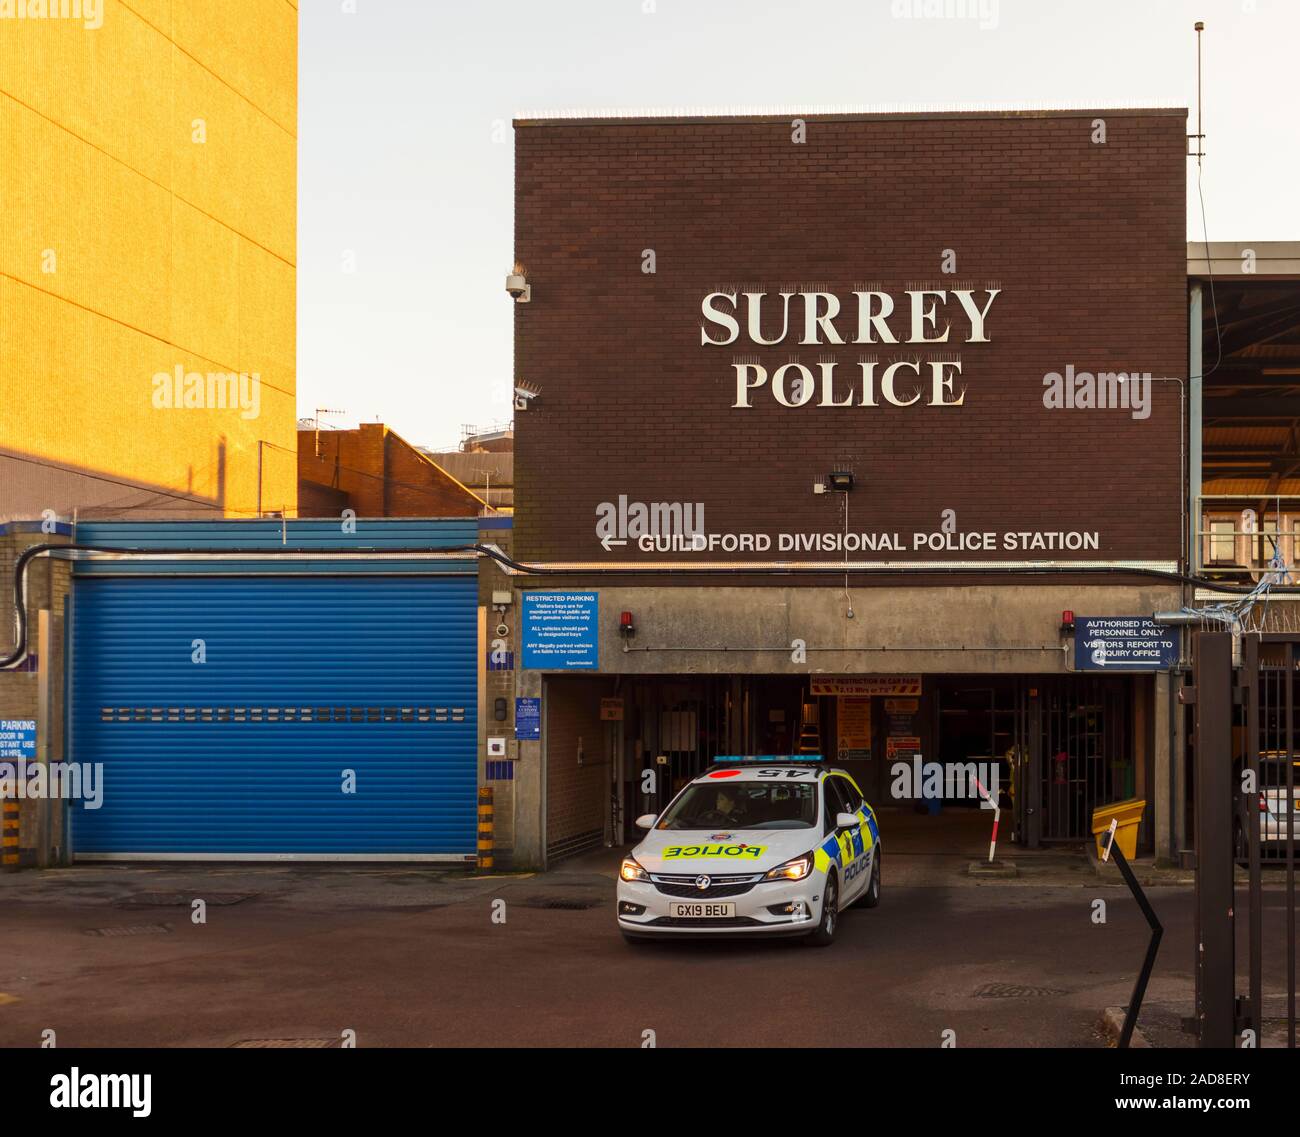 Zeichen für Polizei, Surrey Guildford gg Polizeistation an der lokalen Polizeistation in Guildford, Surrey, Südosten, England, Grossbritannien Stockfoto